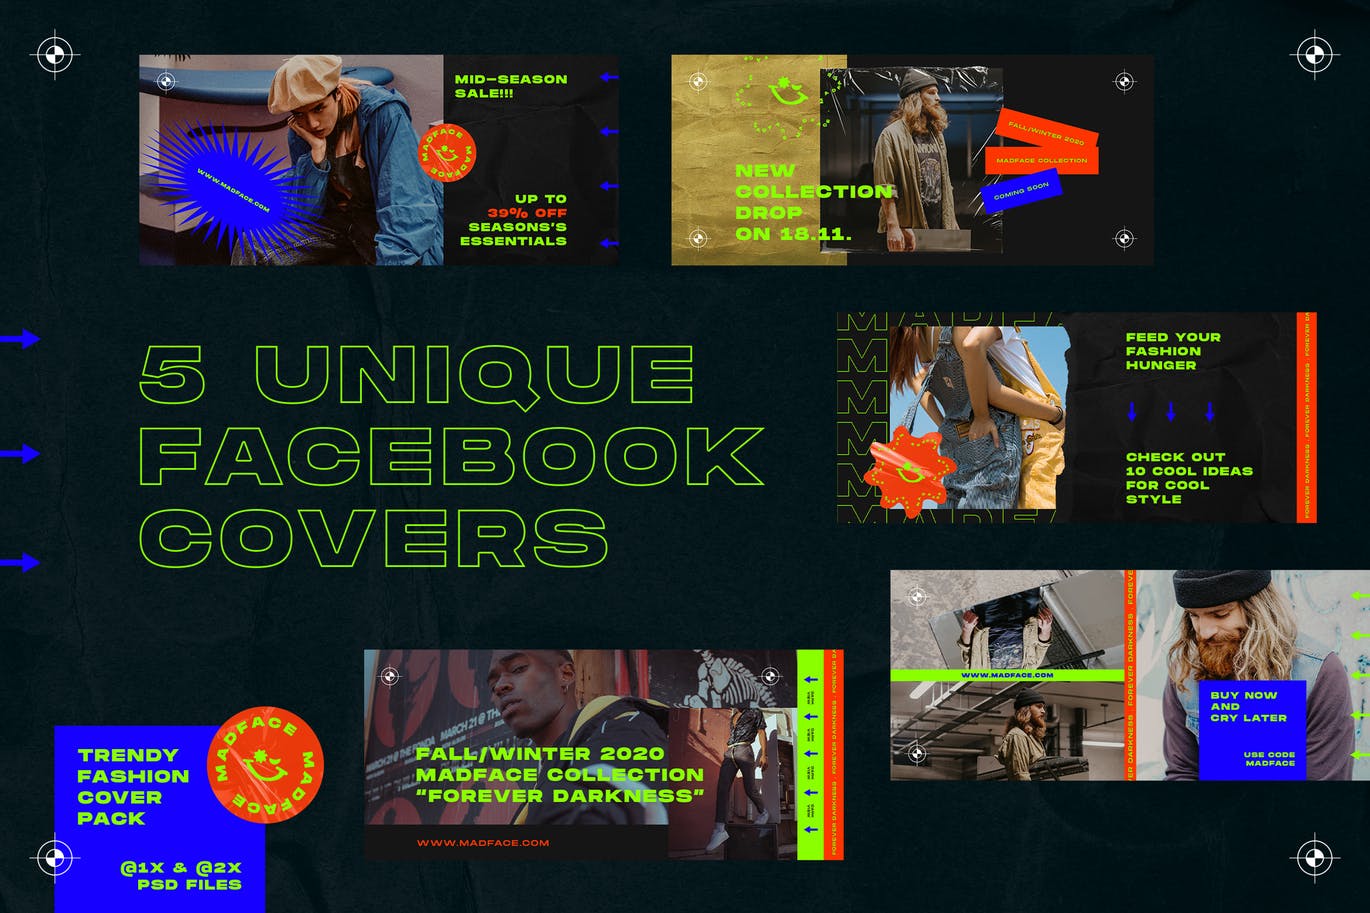 潮流时尚主题Facebook封面设计模板素材库精选 Fashion Facebook Covers插图